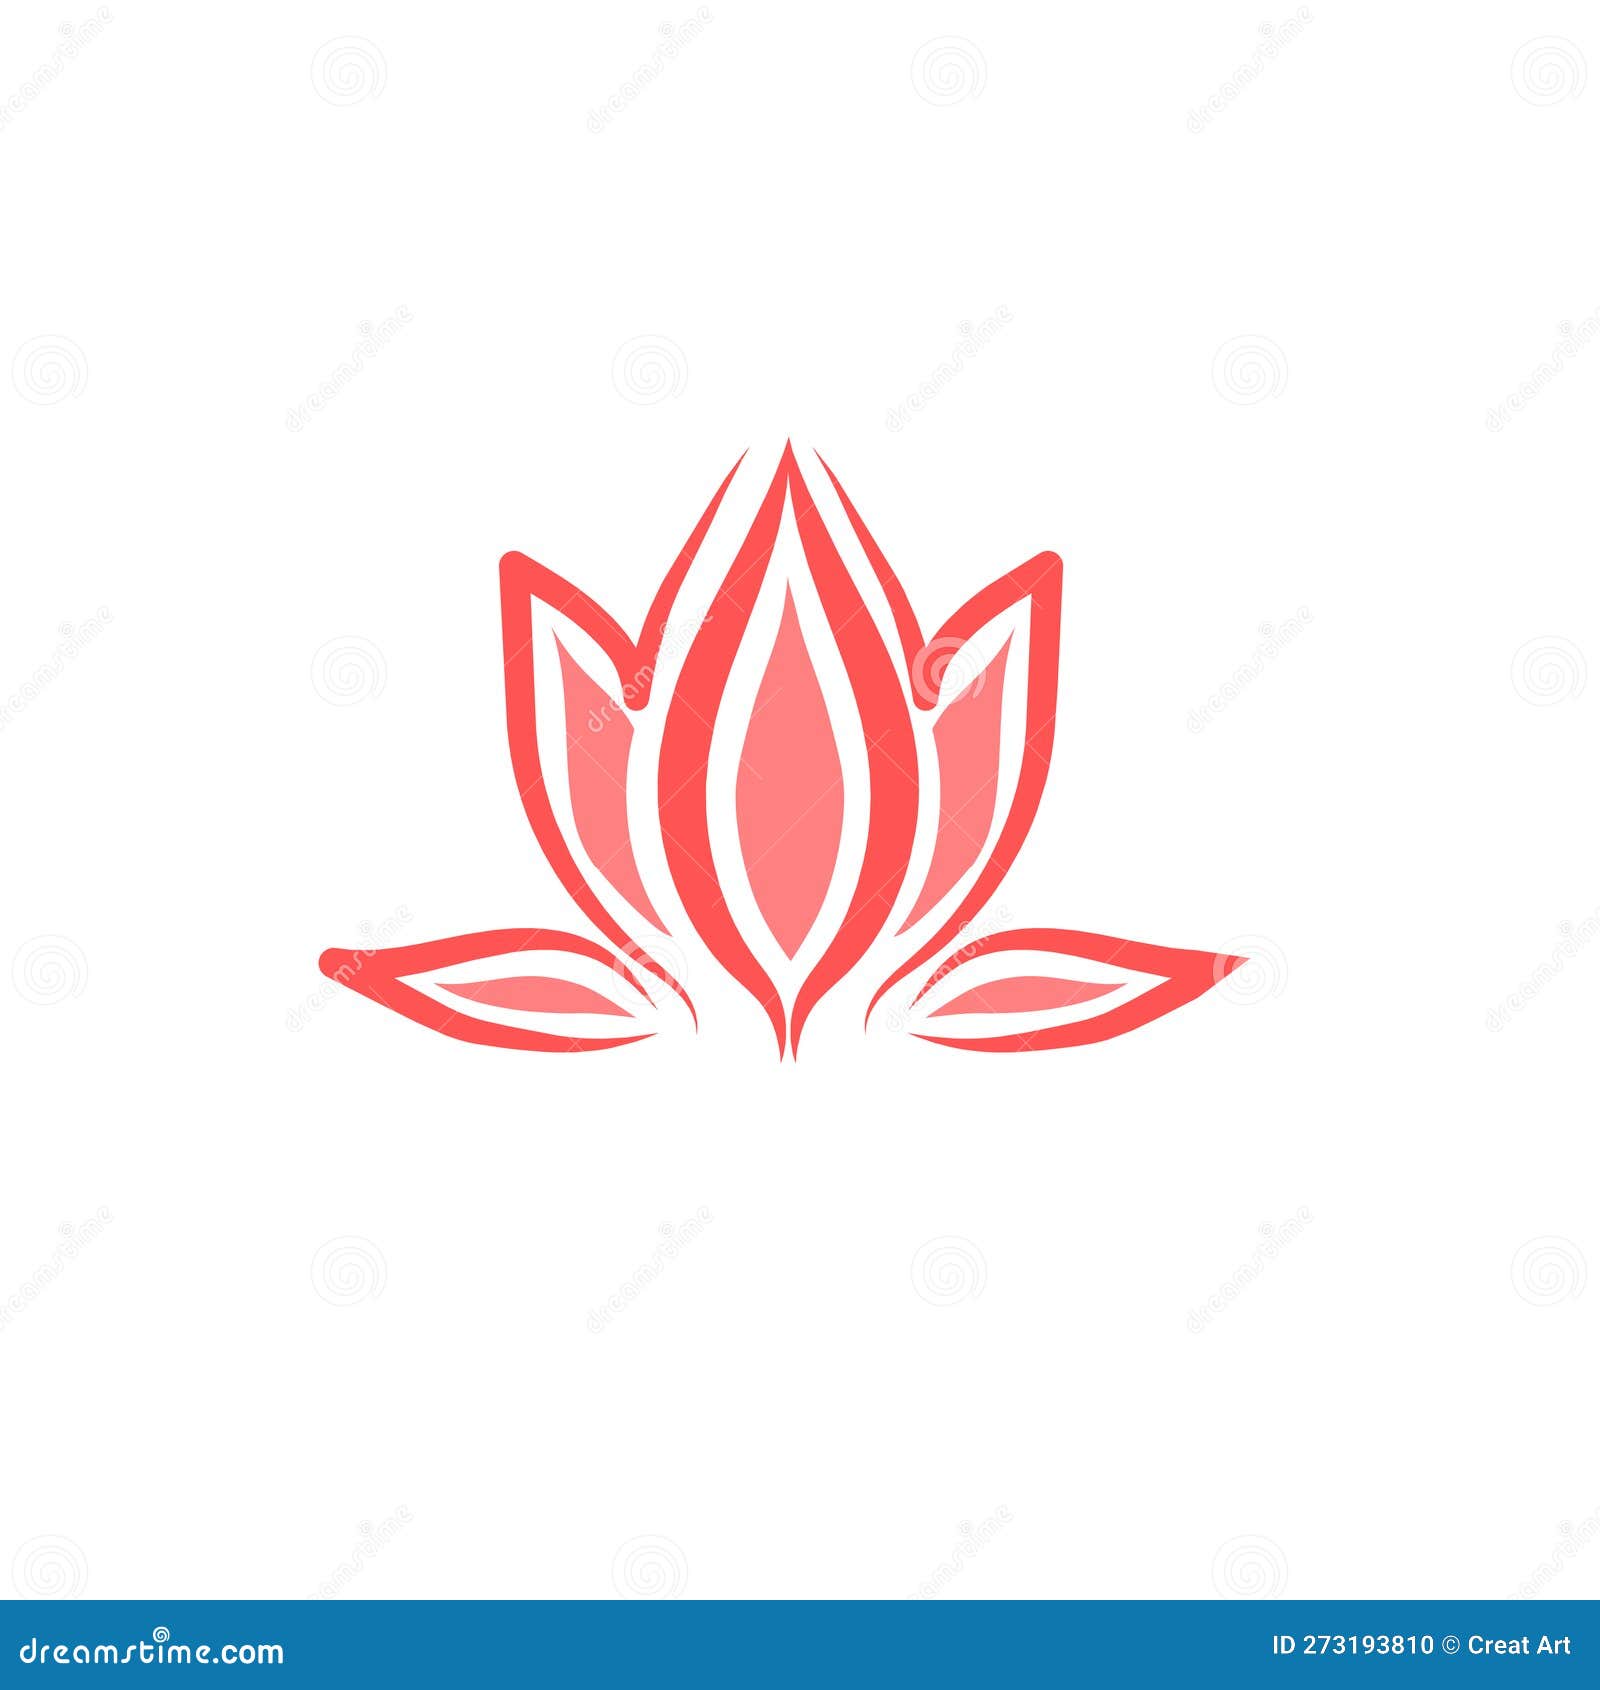 lotus flower logo beutiful 